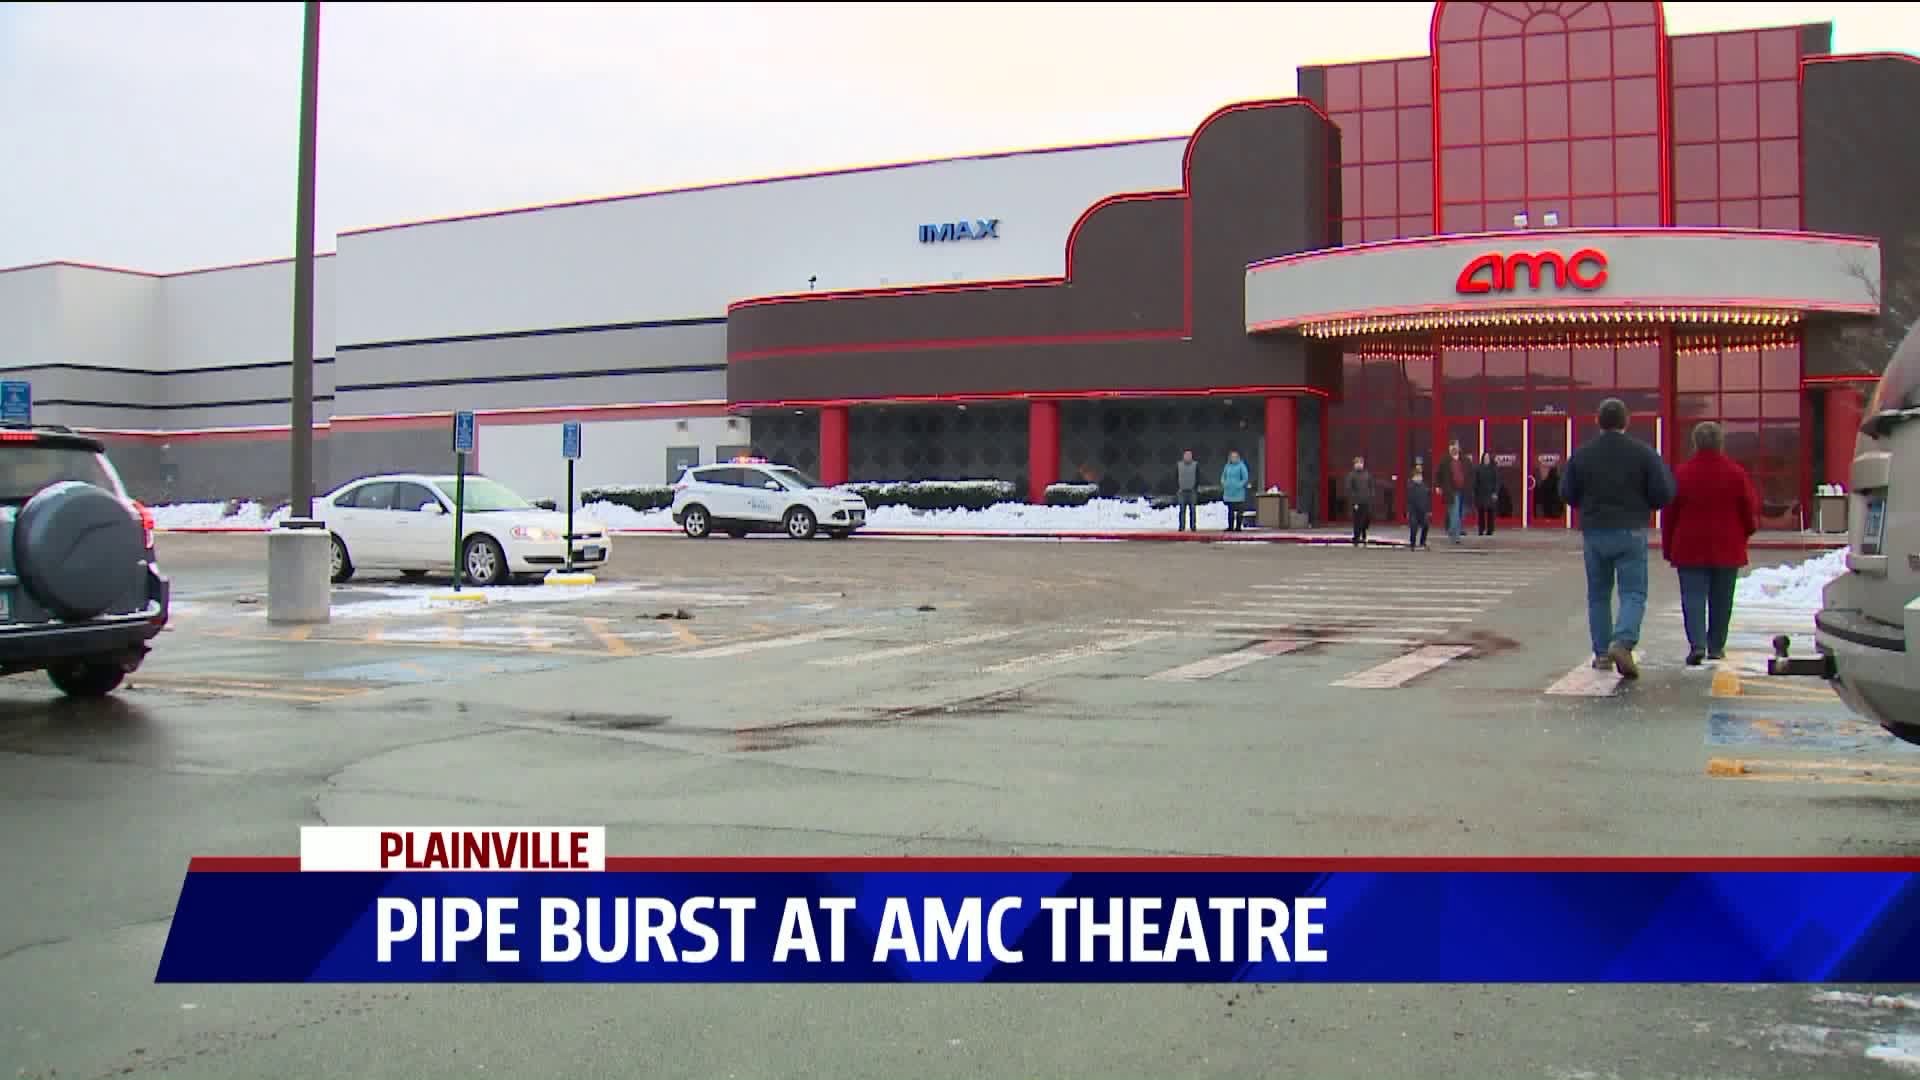 AMC Pipe Burst